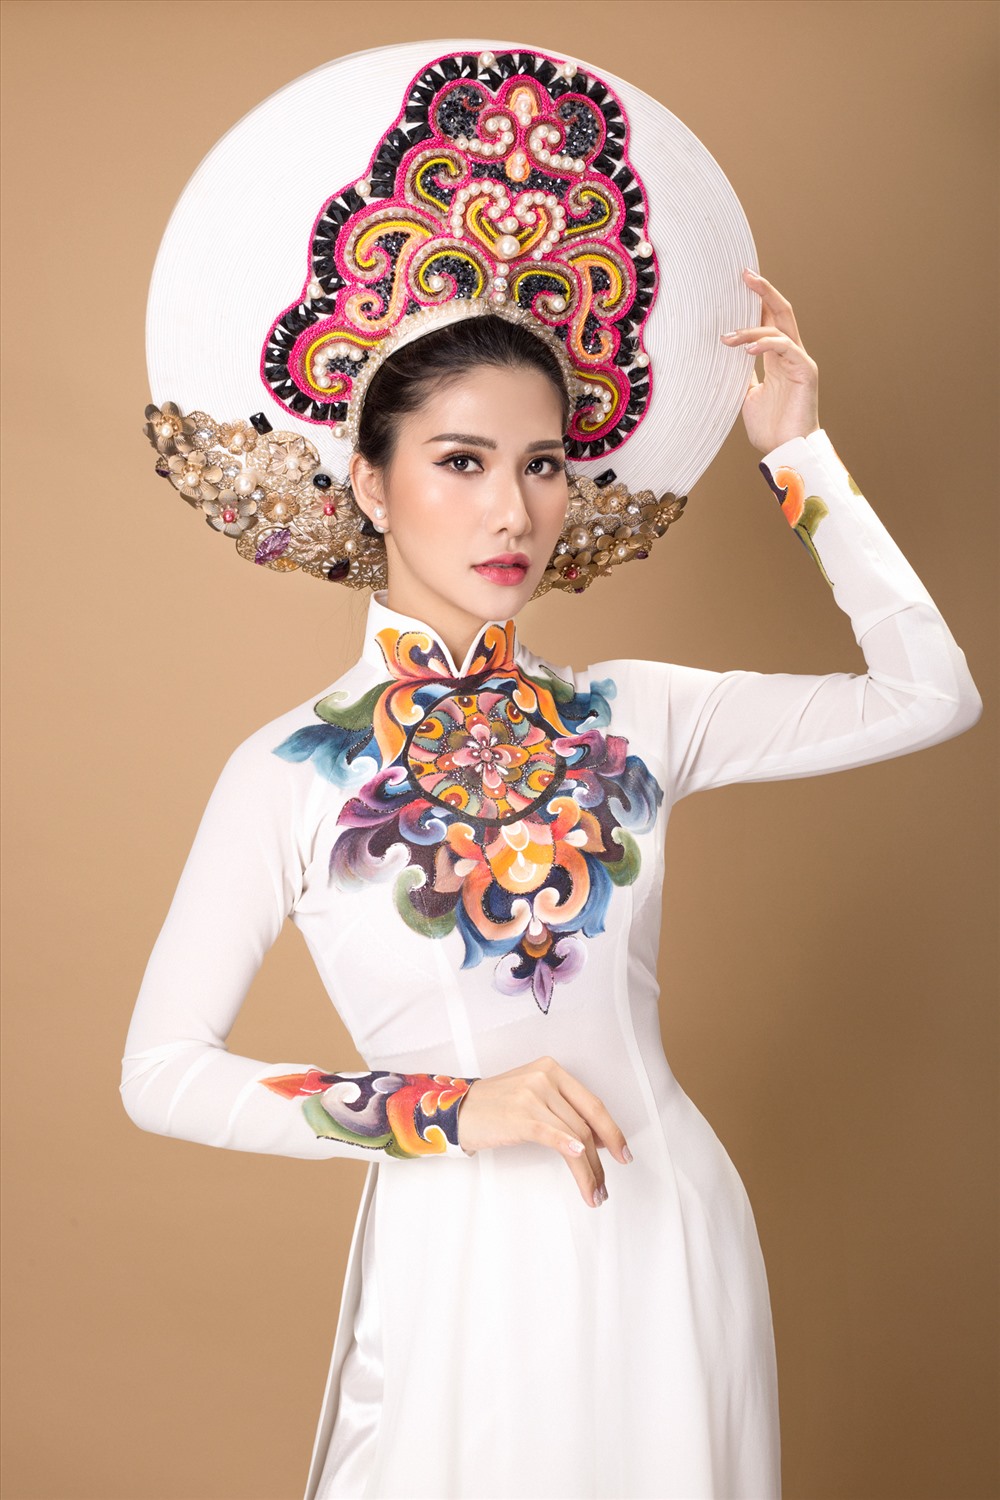 Vì vậy, khi hay tin cô sẽ dự thi Hoa hậu quý tộc thế giới 2017 tại Myanmar, NTK này đã quyết định làm riêng một mẫu đặc biệt để cô nàng mang đi “chinh chiến” tại đấu trường quốc tế.